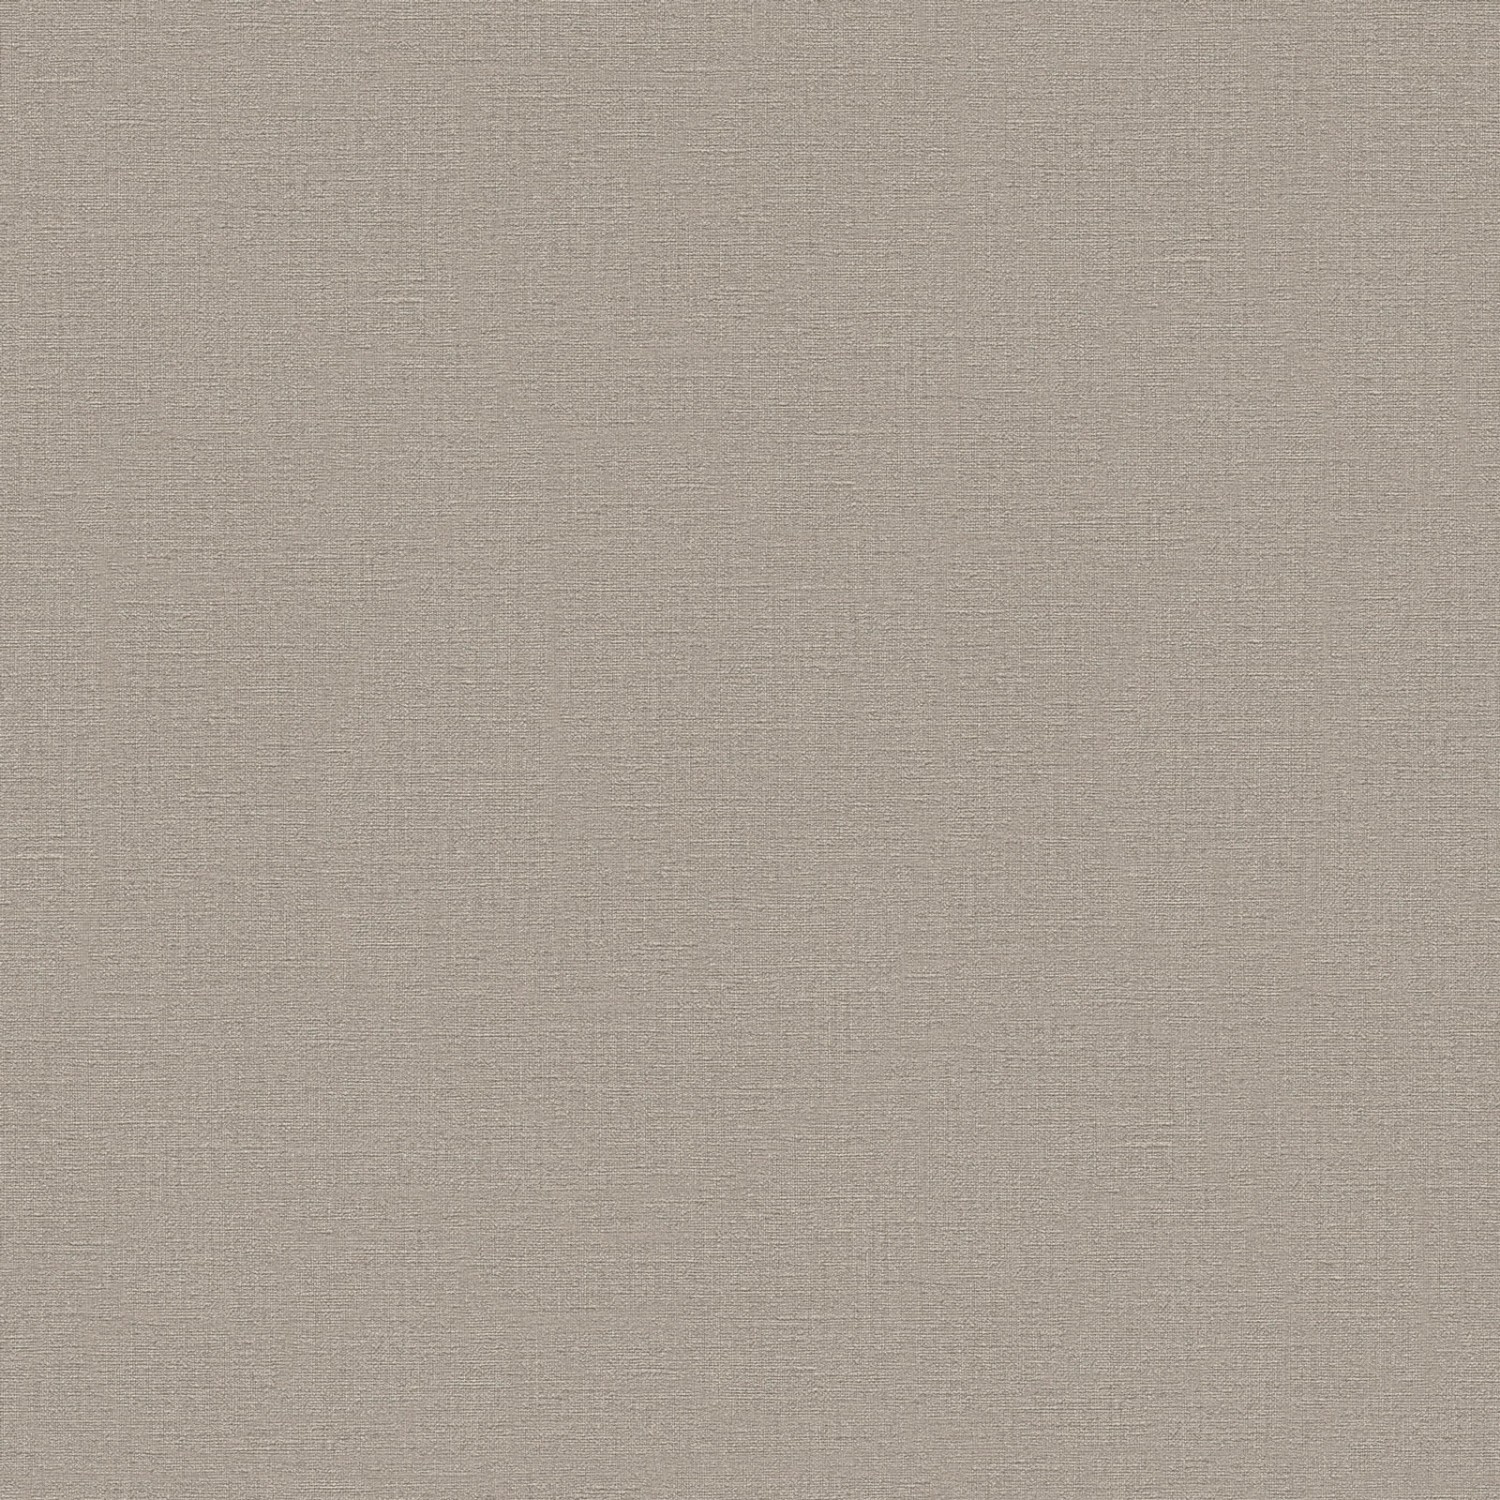 Bricoflor Taupe Vliestapete Einfarbig Wohnzimmer und Büro Uni Tapete in Beige Grau Modern Skandinavische Vlies Wandtapete mit Vinyl Dezent von Bricoflor